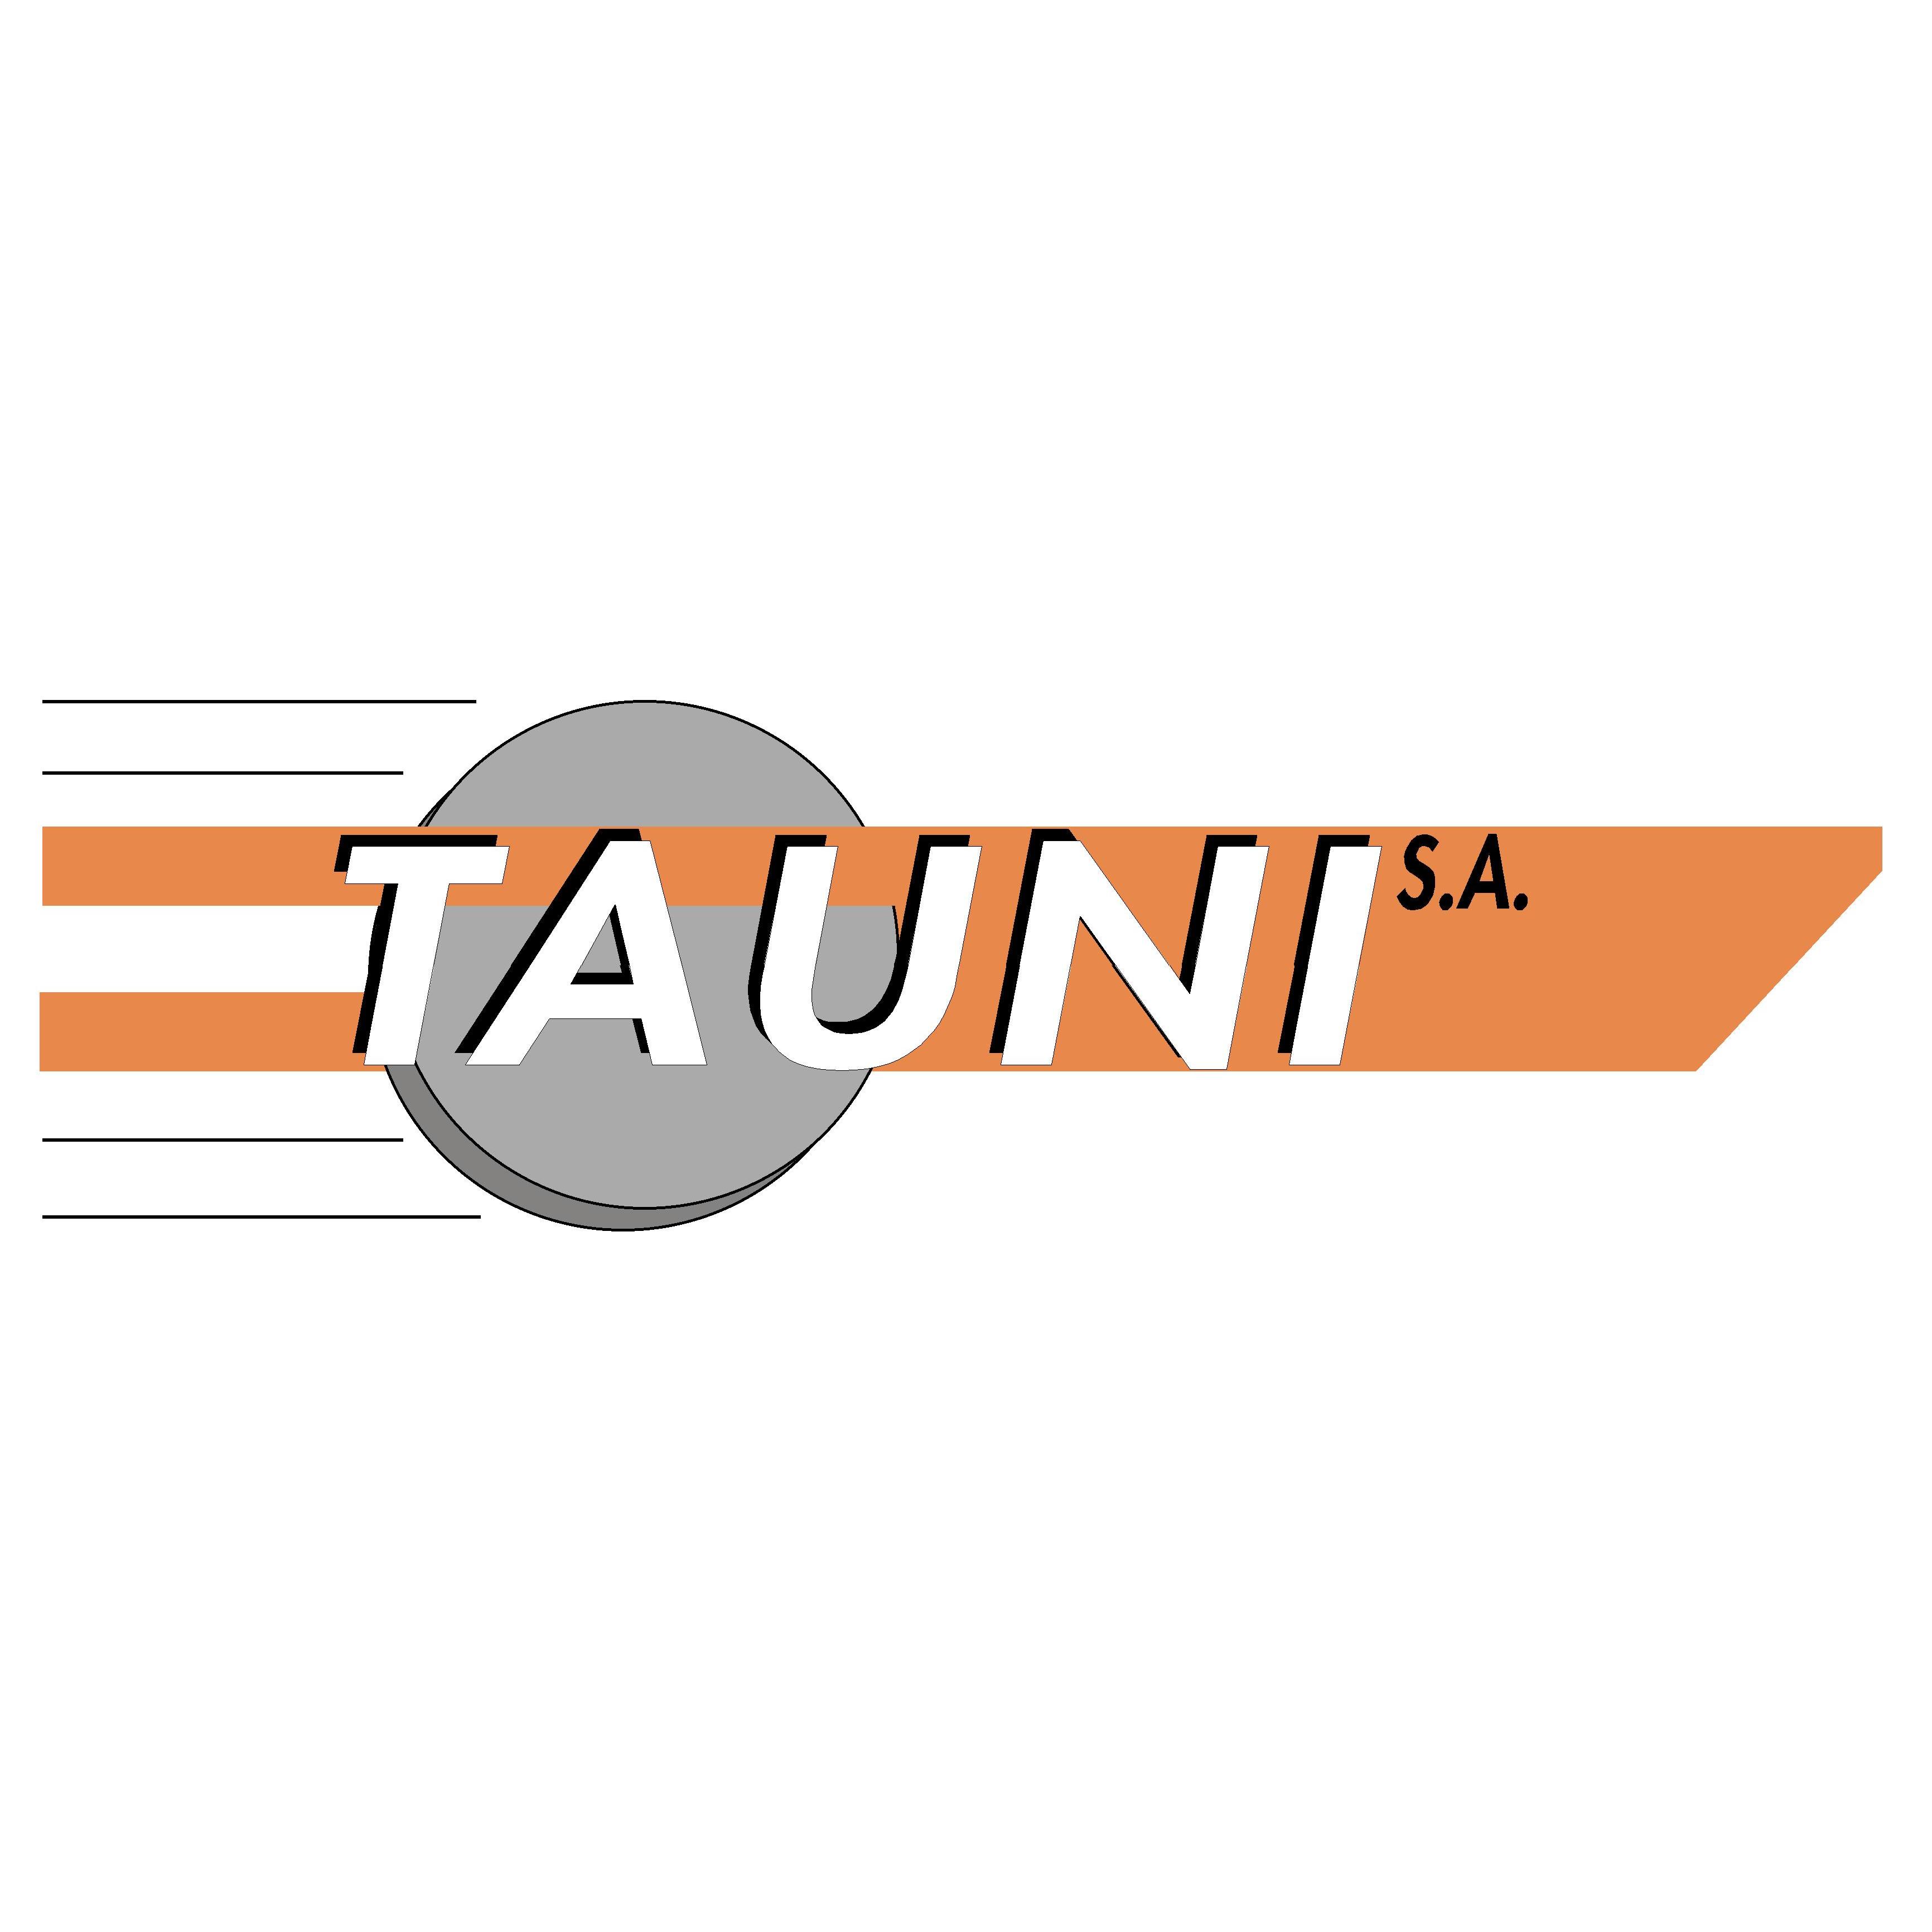 Tauni S.A. Logo